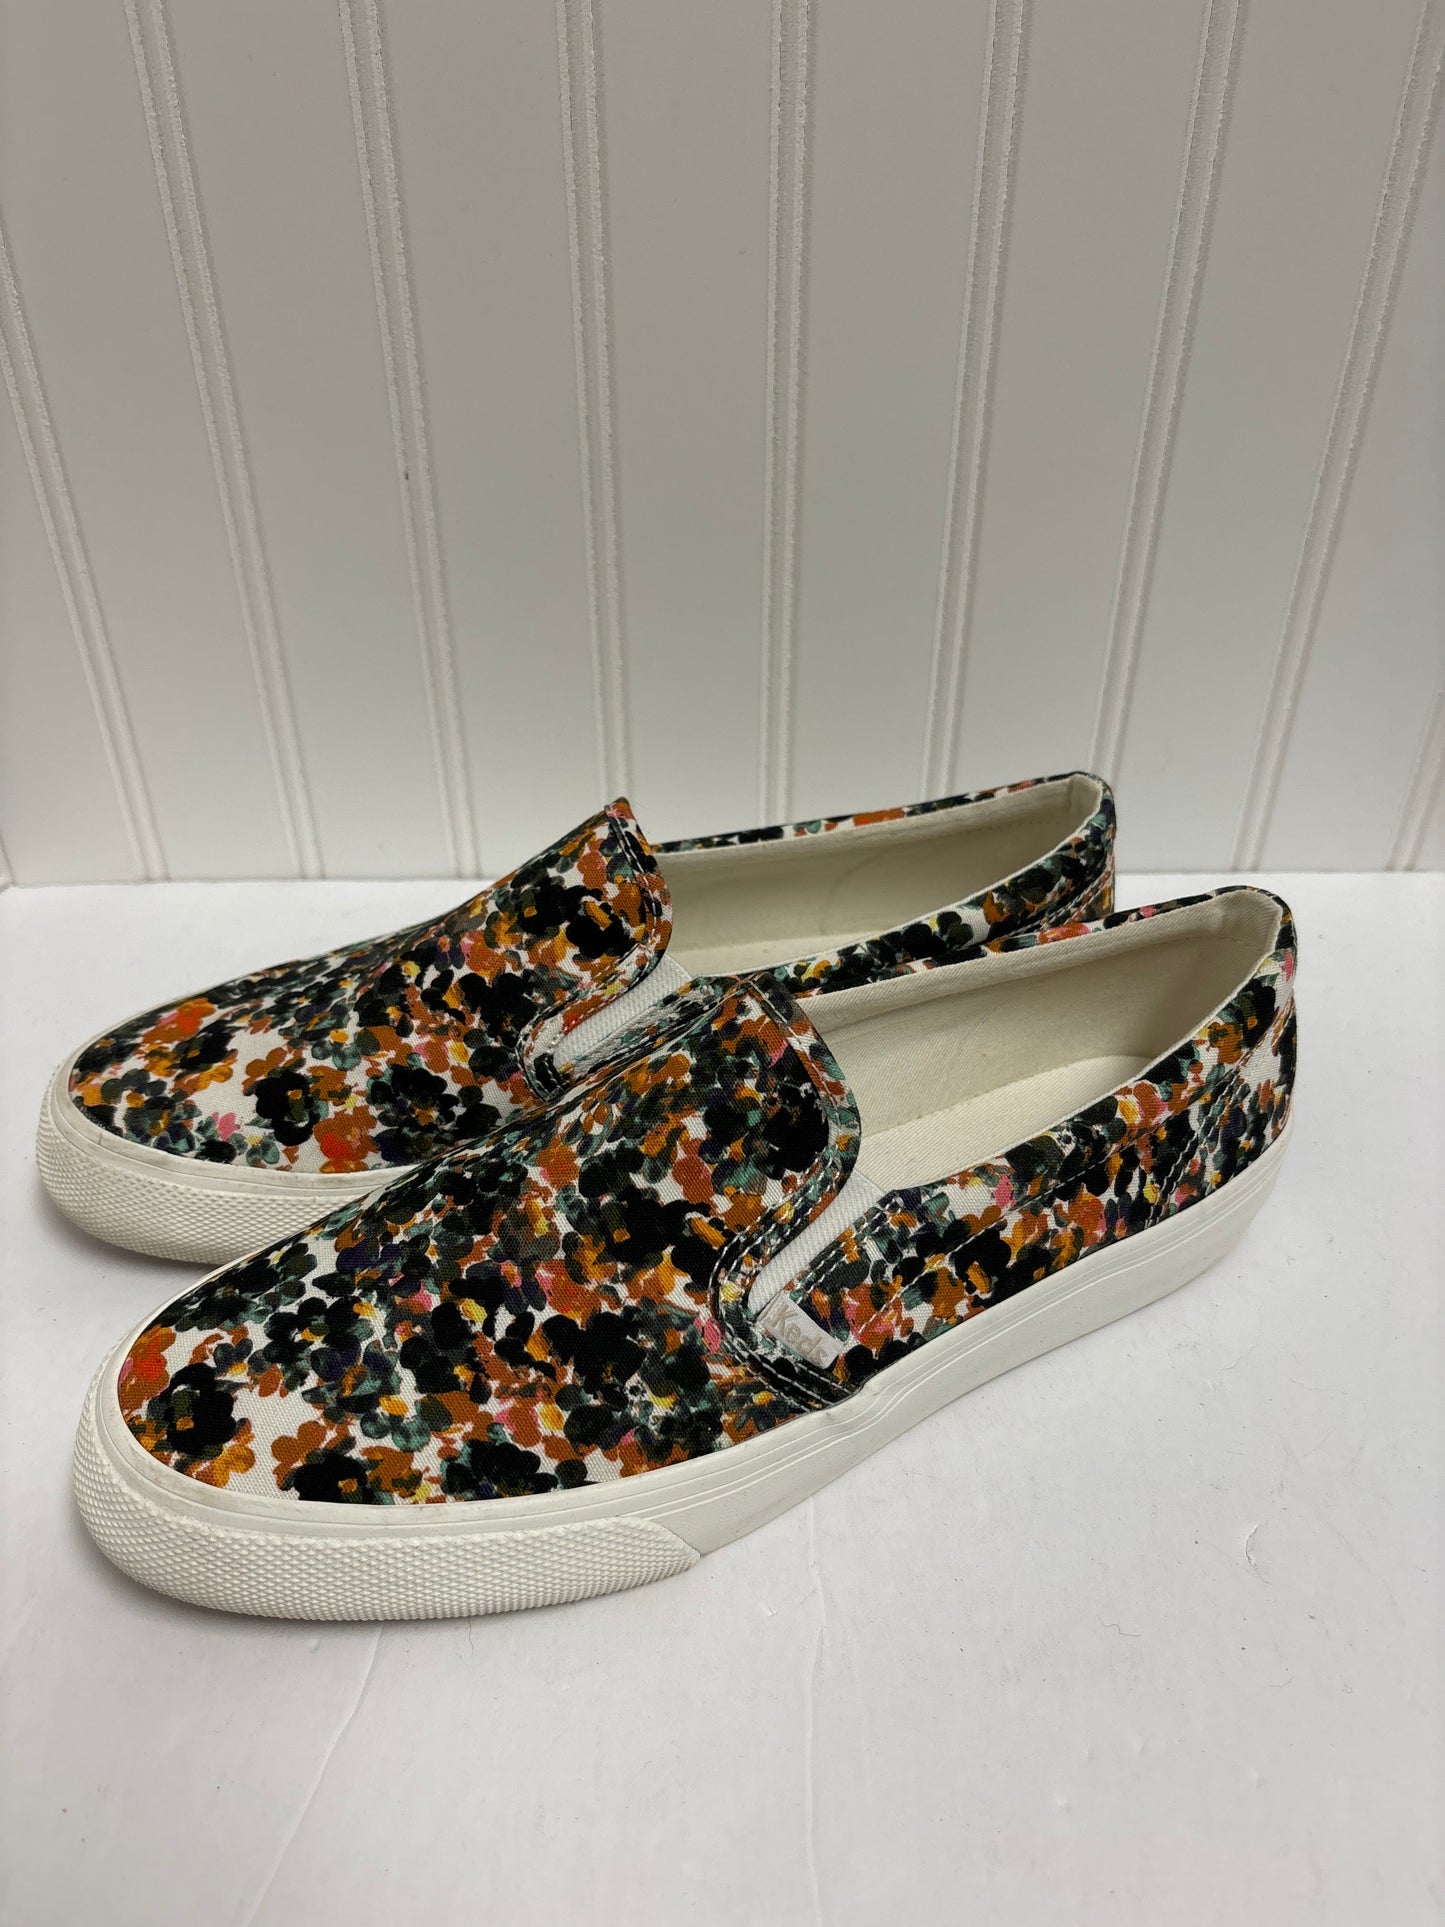 Floral Print Shoes Flats Keds, Size 9.5